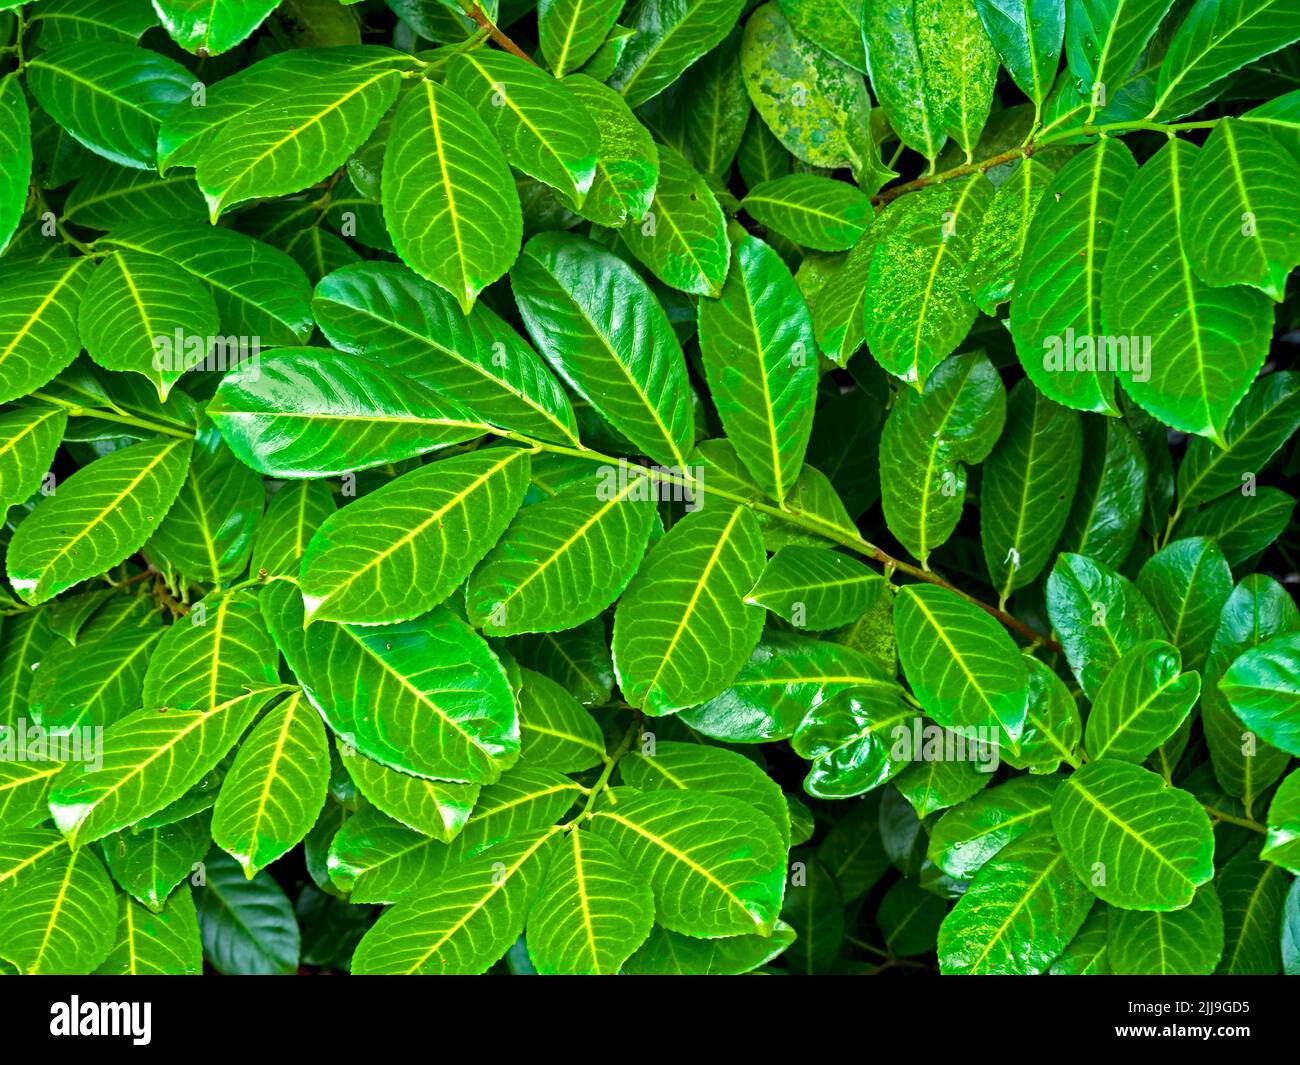 Closeup of green laurel leaves, Prunus laurocerasus Stock Photo